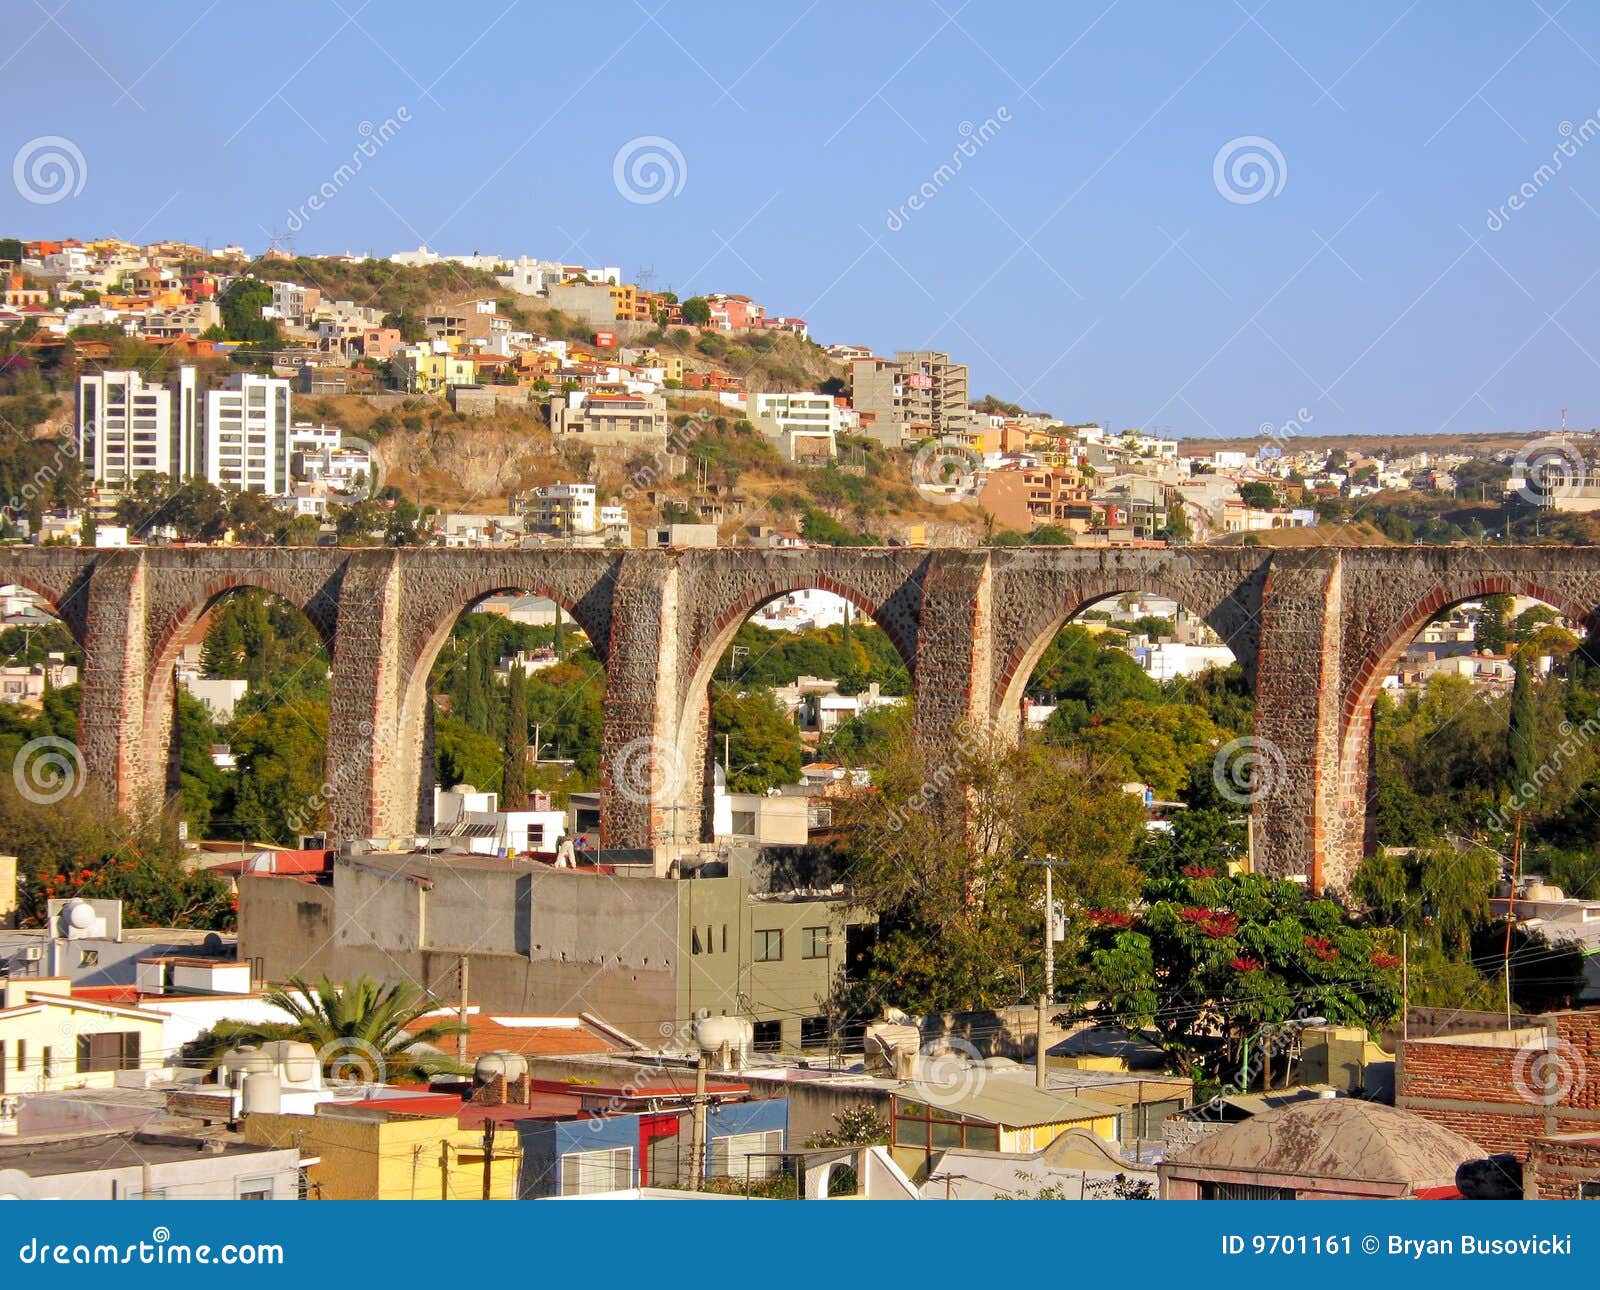 the los arcos (aqueduct) of queretaro, mexico.